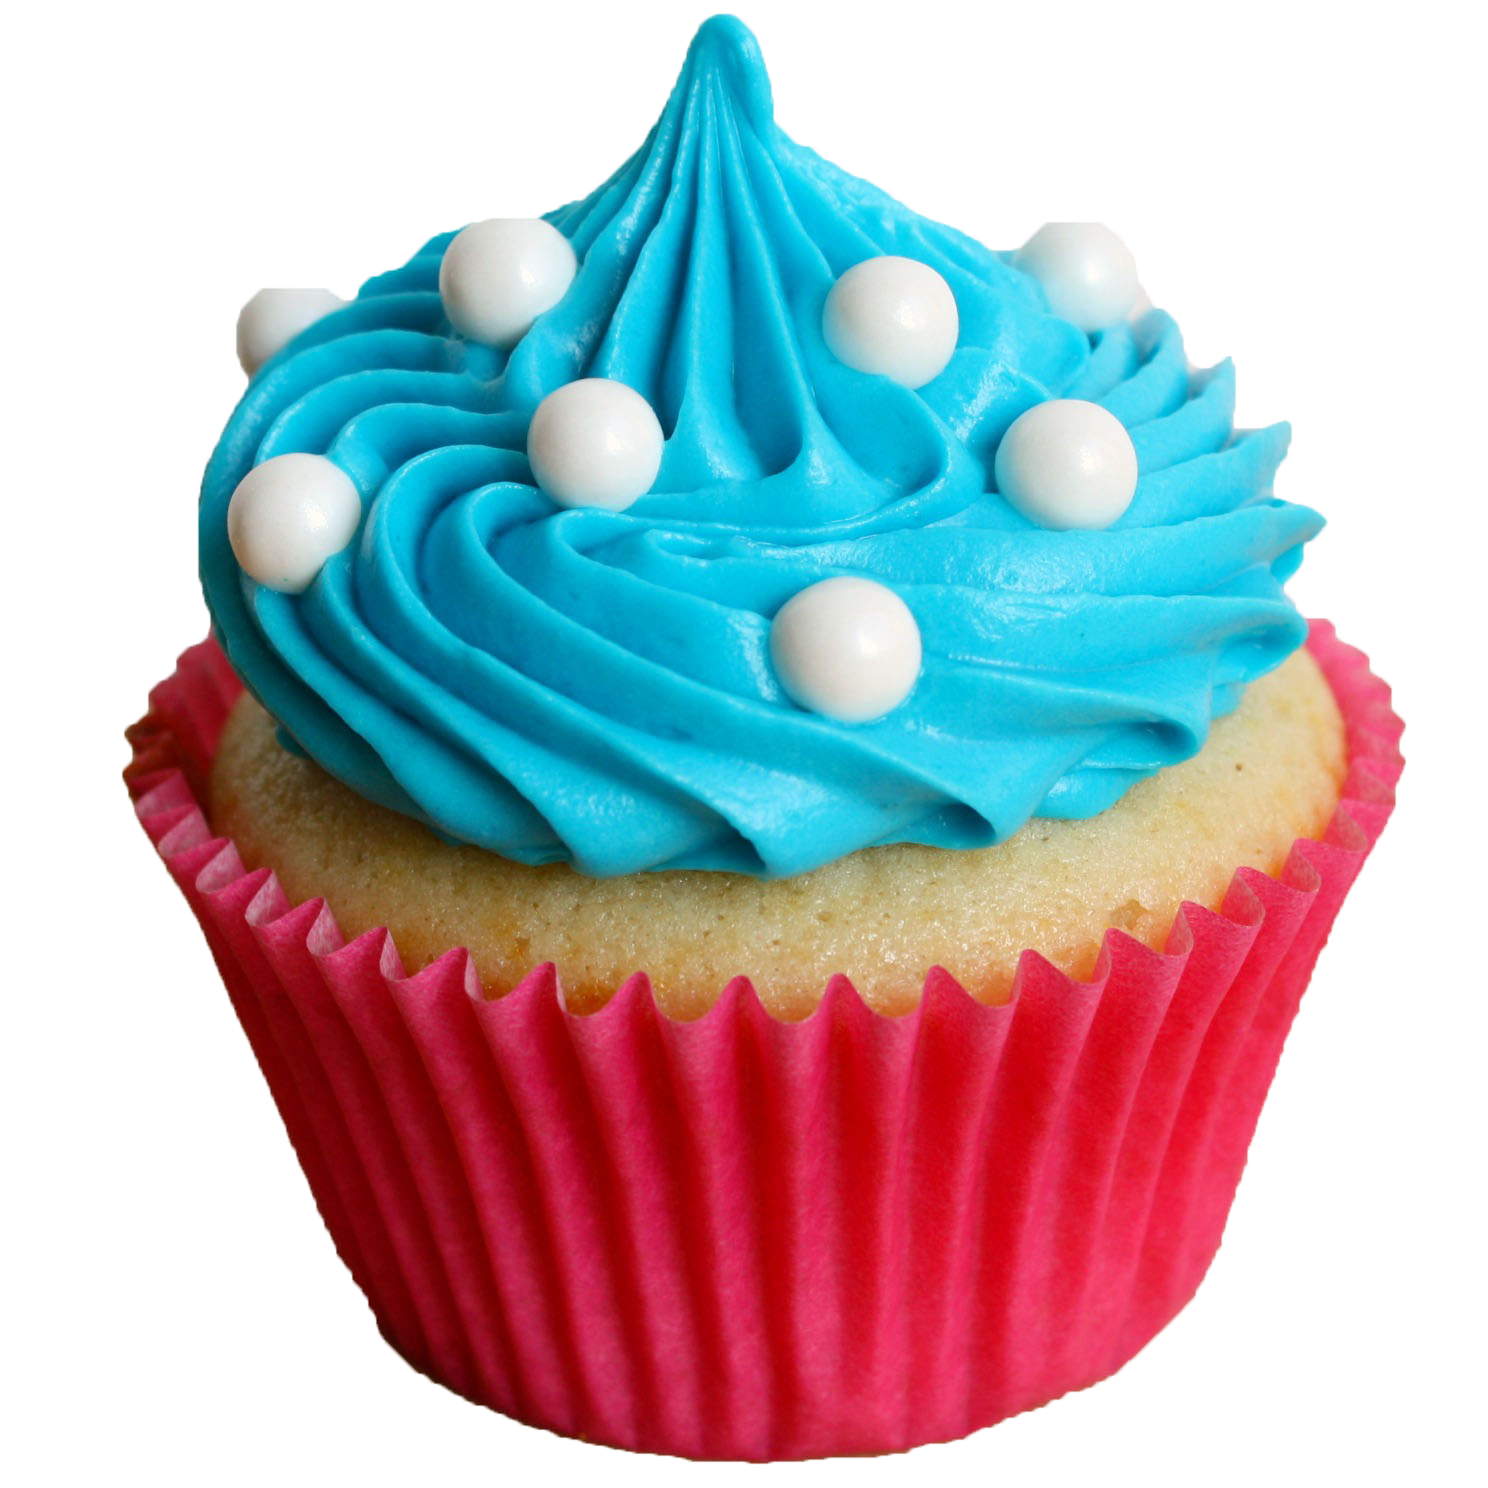 Cupcake PNG Image File